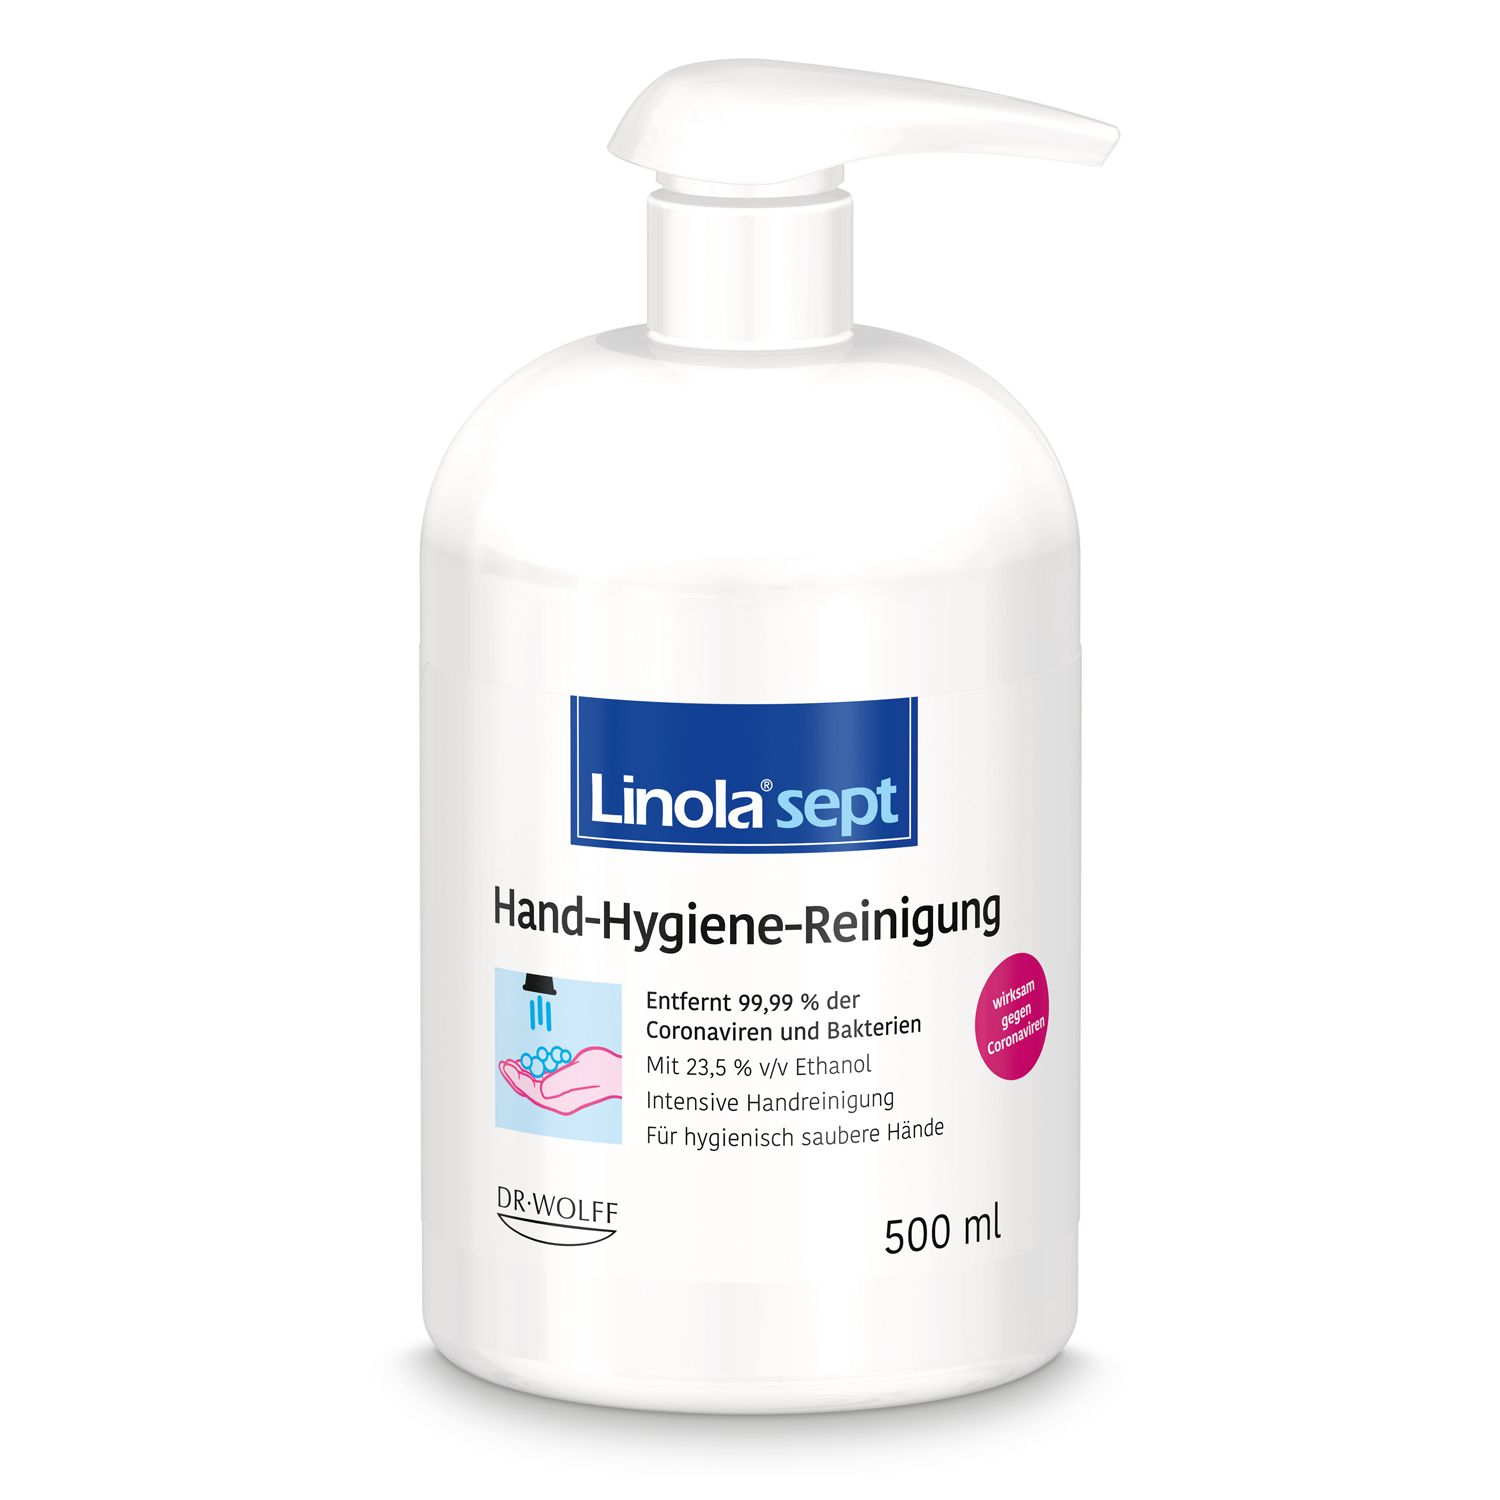 Linola® sept Hand-Hygiene-Reinigung: Handseife für hygienisch saubere Hände